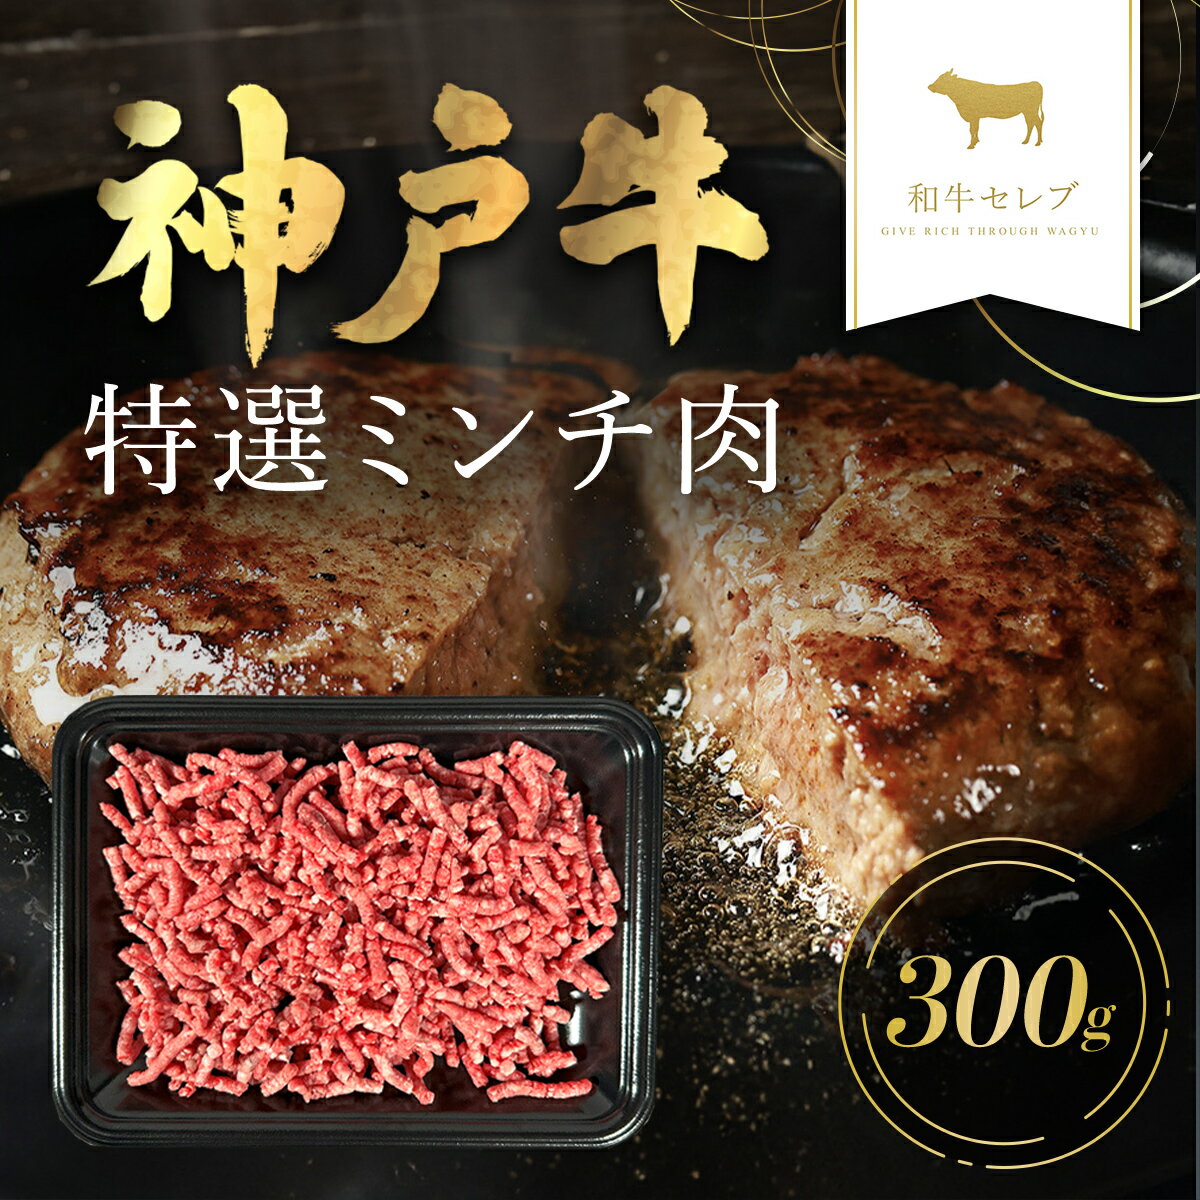 商品説明 贅沢な神戸牛ミンチ肉は、ジューシーな味わいが特徴。ハンバーグやミートボール、タコスなど、多彩な料理に活用可能。炒めると香ばしさが際立ち、スパゲッティソースやカレーにも一層の深みを加えます。 神戸牛の旨味を家庭料理で堪能してみませんか。 ◆「神戸牛」とは 松阪牛・近江牛のブランド牛に合わせて呼ばれている俗称であり、本当の名称は「神戸ビーフ」または「神戸肉」と呼ばれます。 神戸市内の牧場で飼育されている牛が「神戸ビーフ」になるというものではありません。「神戸肉流通推進協議会」という団体があり、この協議会が定める厳しい定義をクリアしたものだけに、「神戸ビーフ」「神戸肉」の称号が与えられます。 神戸牛のおいしさの秘密は甘味、脂肪、うまみ成分肉繊維がきめ細かく上品な甘味がある。融点の低い不飽和脂肪酸が細かく筋肉の中に入り込んでいる。うまみ成分のイノシン酸を含む。 名称 【和牛セレブ】神戸牛 特選ミンチ肉 内容量 特選ミンチ肉300g 産地 兵庫県朝来市 賞味期限 製造日から30日 アレルギー 牛肉 提供元 和牛セレブ 発送タイミング 順次発送します。 ※通常は入金確認後30日前後でのお届けとなります。 ※年末の繁忙期などに申込を多数いただいた場合はさらに日数を要することもあります。 ※配送日の指定、北海道・東北・沖縄・離島へのお届けはできません。 備考 ※画像はイメージです。 ※お届けするお礼品は、神戸牛のみです ・ふるさと納税よくある質問はこちら ・寄付申込みのキャンセル、返礼品の変更・返品はできません。あらかじめご了承ください。「ふるさと納税」寄付金は、下記の事業を推進する資金として活用してまいります。 （1）雇用創出・定住／交流人口増加に関する事業（産業振興・雇用促進など） ◆竹田城跡や生野銀山跡を中心とした観光振興 ◆人材育成・シティプロモーションの推進 ◆産業振興と雇用促進 ◆持続的な定住に向けた施策の促進 ◆計画的な土地利用と市街地整備の推進 ◆多文化交流の推進 ◆岩津ねぎ、黒大豆などの生産拡大と販路拡大 （2）安全安心なまちに関する事業（防犯・防災対策の推進など） ◆みんなで取り組む災害に強いまちづくり ◆消防・防犯体制と交通安全の充実 ◆森林が持つ多面的な機能を発揮させる林業の振興 ◆みんなで支える地域福祉の推進 （3）健やかなまちに関する事業（文化芸術・生涯学習の推進など） ◆竹田城跡、生野銀山跡など後世に残したい歴史文化遺産の保存活用 ◆生涯学習・生涯スポーツの推進◆豊かな心を育む文化芸術の振興 ◆人権が尊重されるまちづくり （4）暮らしやすいまちに関する事業（快適な生活基盤の整備など） ◆利便性のある公共交通の確保 ◆循環と共生の環境保全の推進 ◆暮らしを支える上下水道の整備 ◆快適な生活基盤の整備 （5）安心して子育てができるまちに関する事業（子育て支援・教育の充実など） ◆健やかな乳幼児の育成支援 ◆子育て支援の充実 ◆確かな学力と豊かな心を育む教育の推進 ◆魅力ある教育環境の推進 ◆出会い応援事業の推進 （6）生きがいをもって元気に暮らせるまちに関する事業（医療・福祉の充実など） ◆豊かな高齢社会の創出 ◆安心できる地域医療体制の充実 ◆障害のある人の自立支援の充実 ◆みんなで支える地域福祉の推進 ◆こころとからだの健康づくりの推進 （7）その他 ◆市長が定める事業 入金確認後、注文内容確認画面の【注文者情報】に記載の住所にお送りいたします。 発送の時期は、寄付確認後2ヵ月以内を目途に、お礼の特産品とは別にお送りいたします。